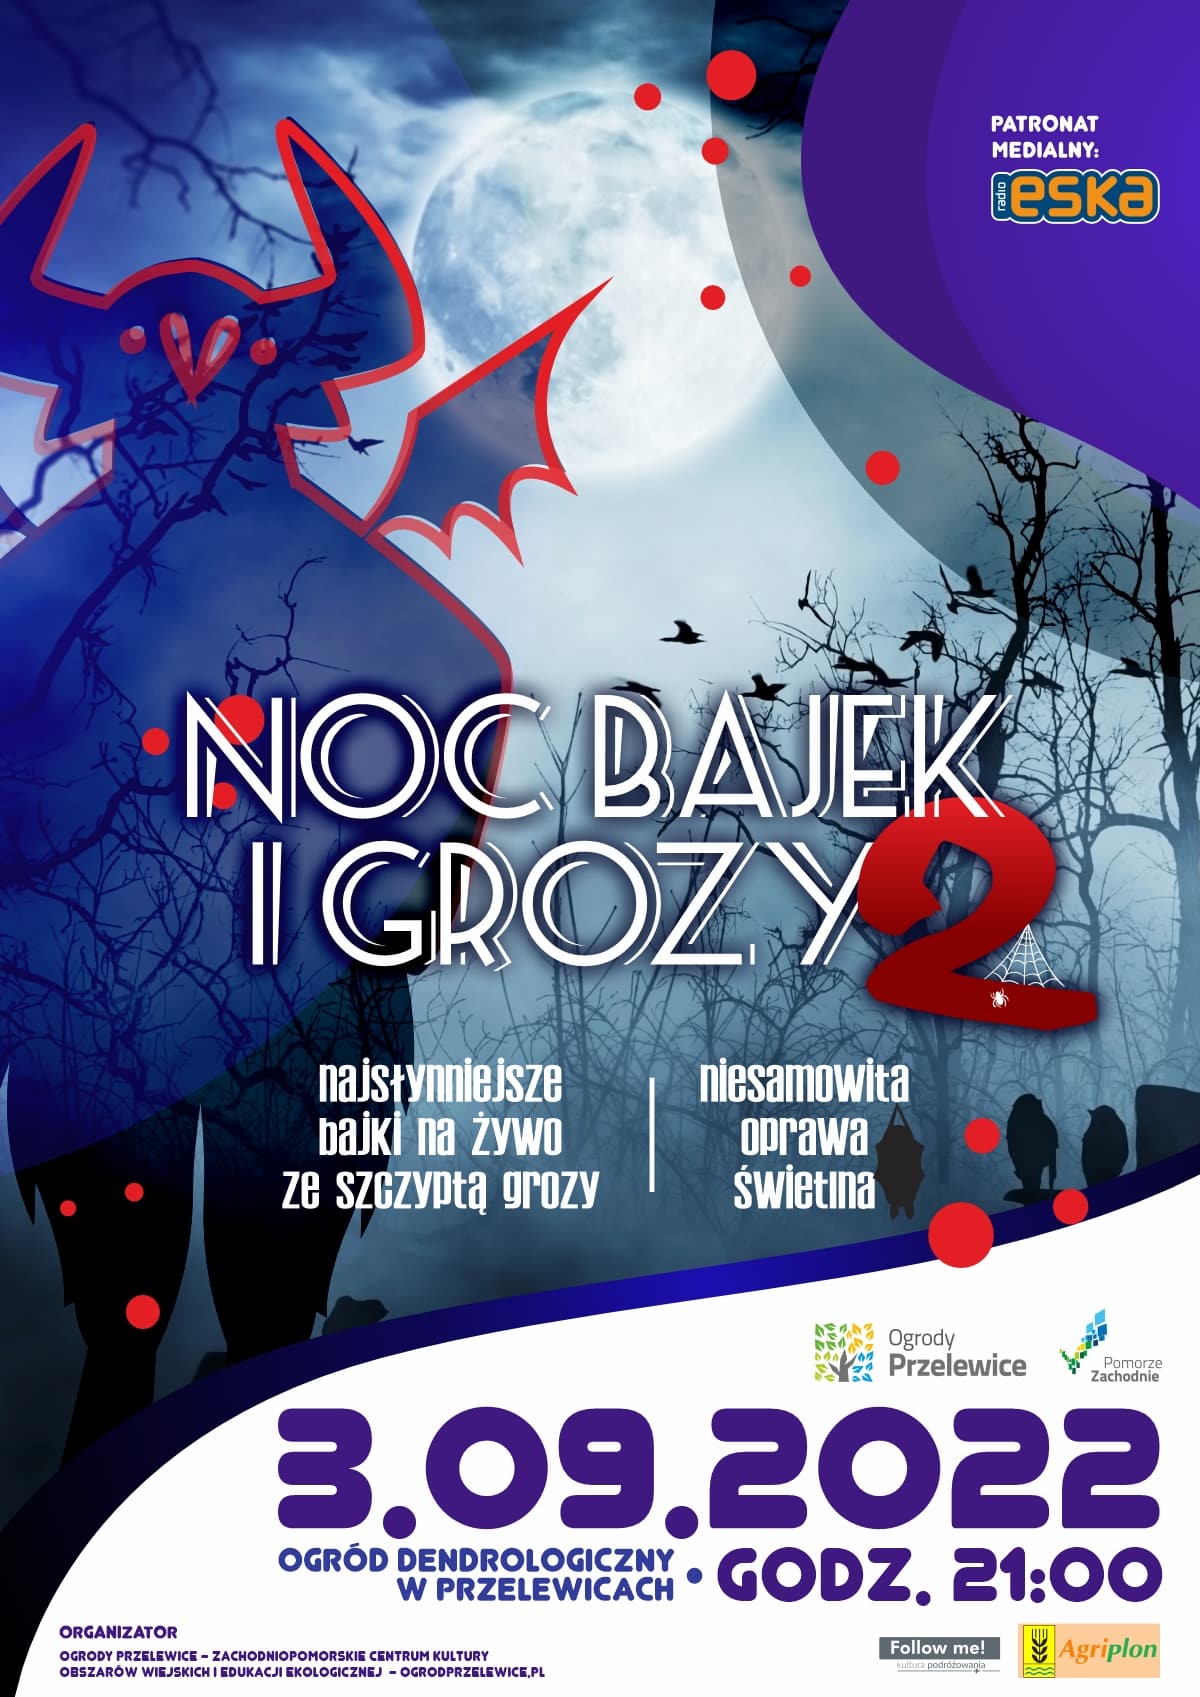 You are currently viewing Przed nami kolejna edycja fascynującego wydarzenia w Ogrodach Przelewice!